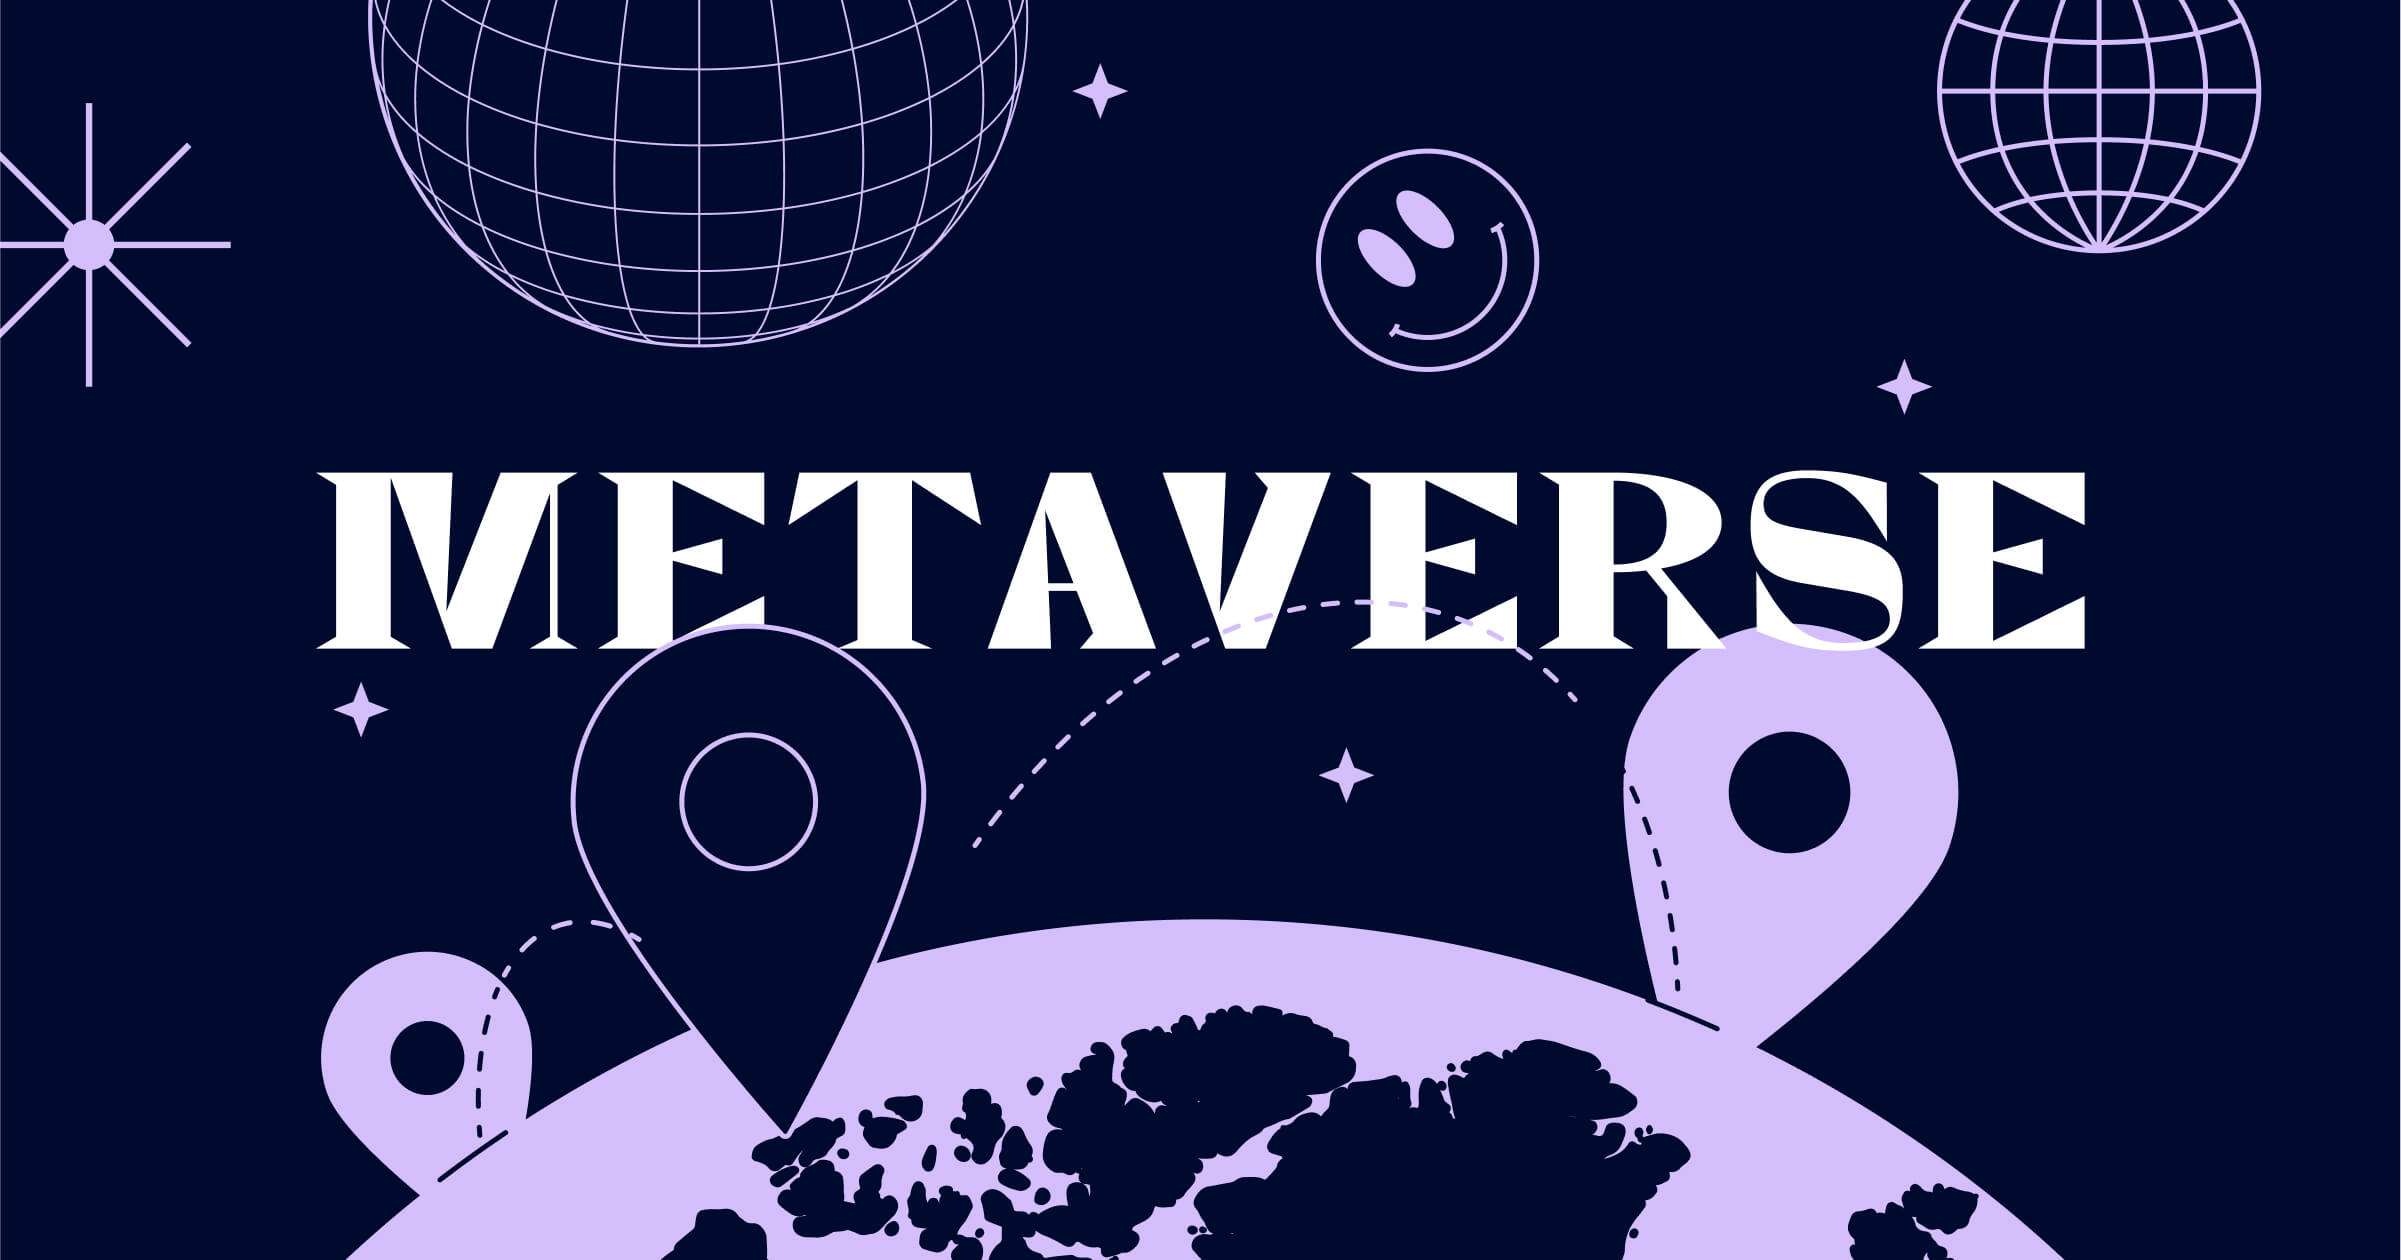 图片展示了深色背景上的“METAVERSE”字样，周围有地球、位置标记、轨迹线和星球等图案，体现了科技和虚拟世界的概念。